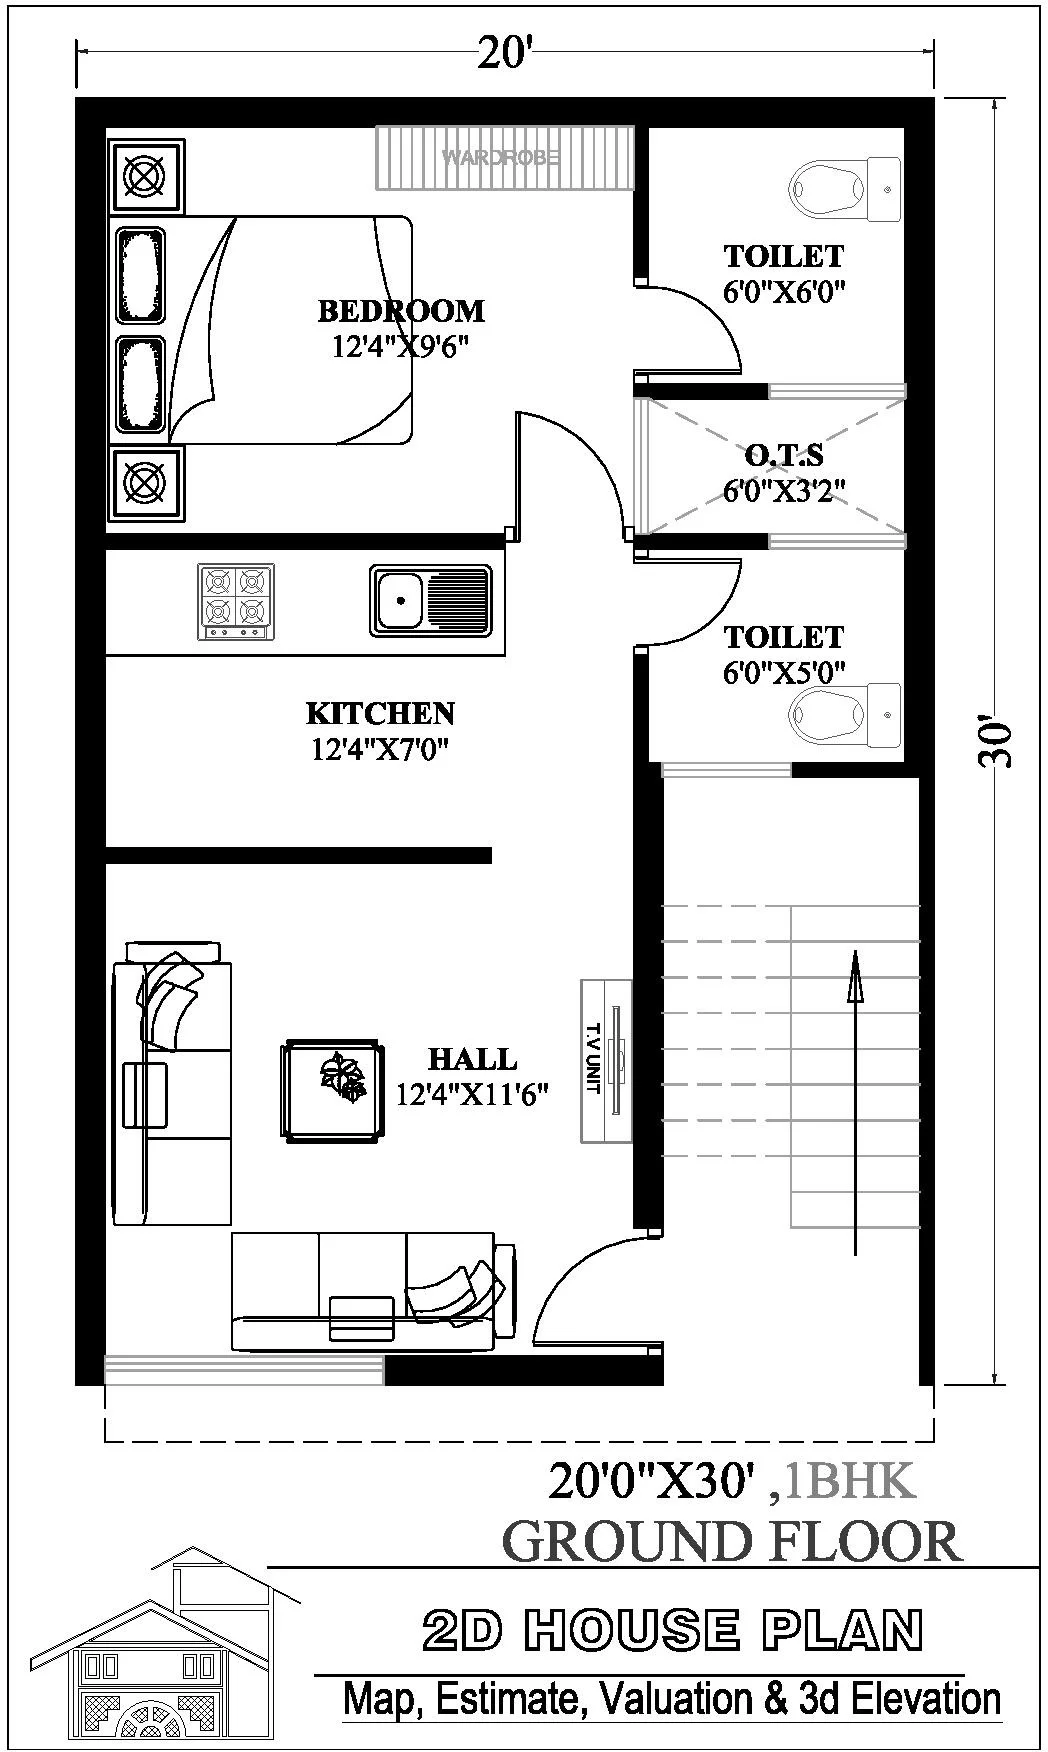 20x30 house plan